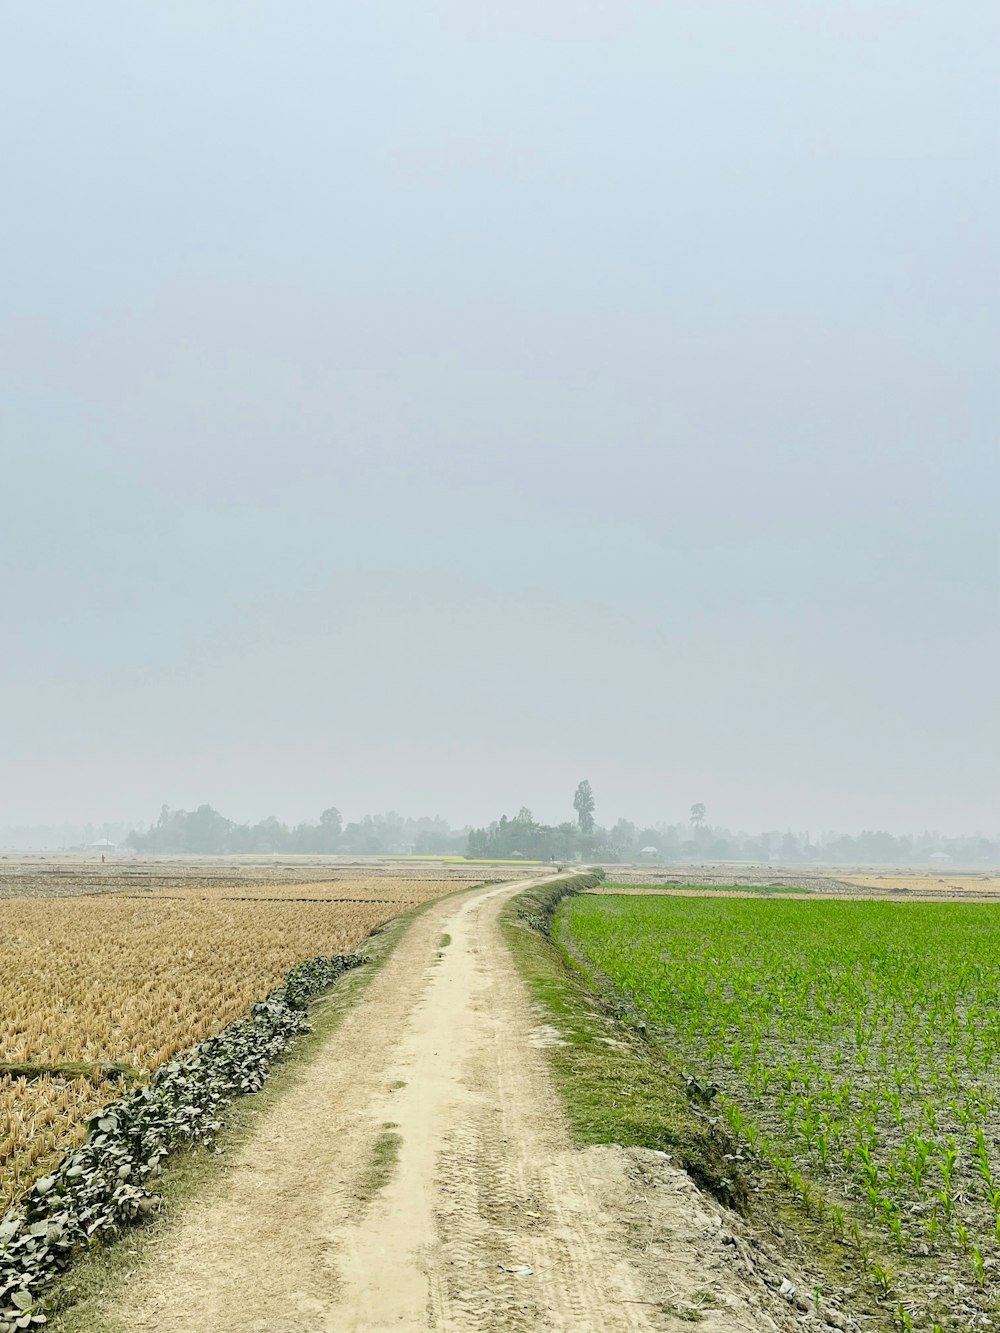 a dirt road running through a field of crops